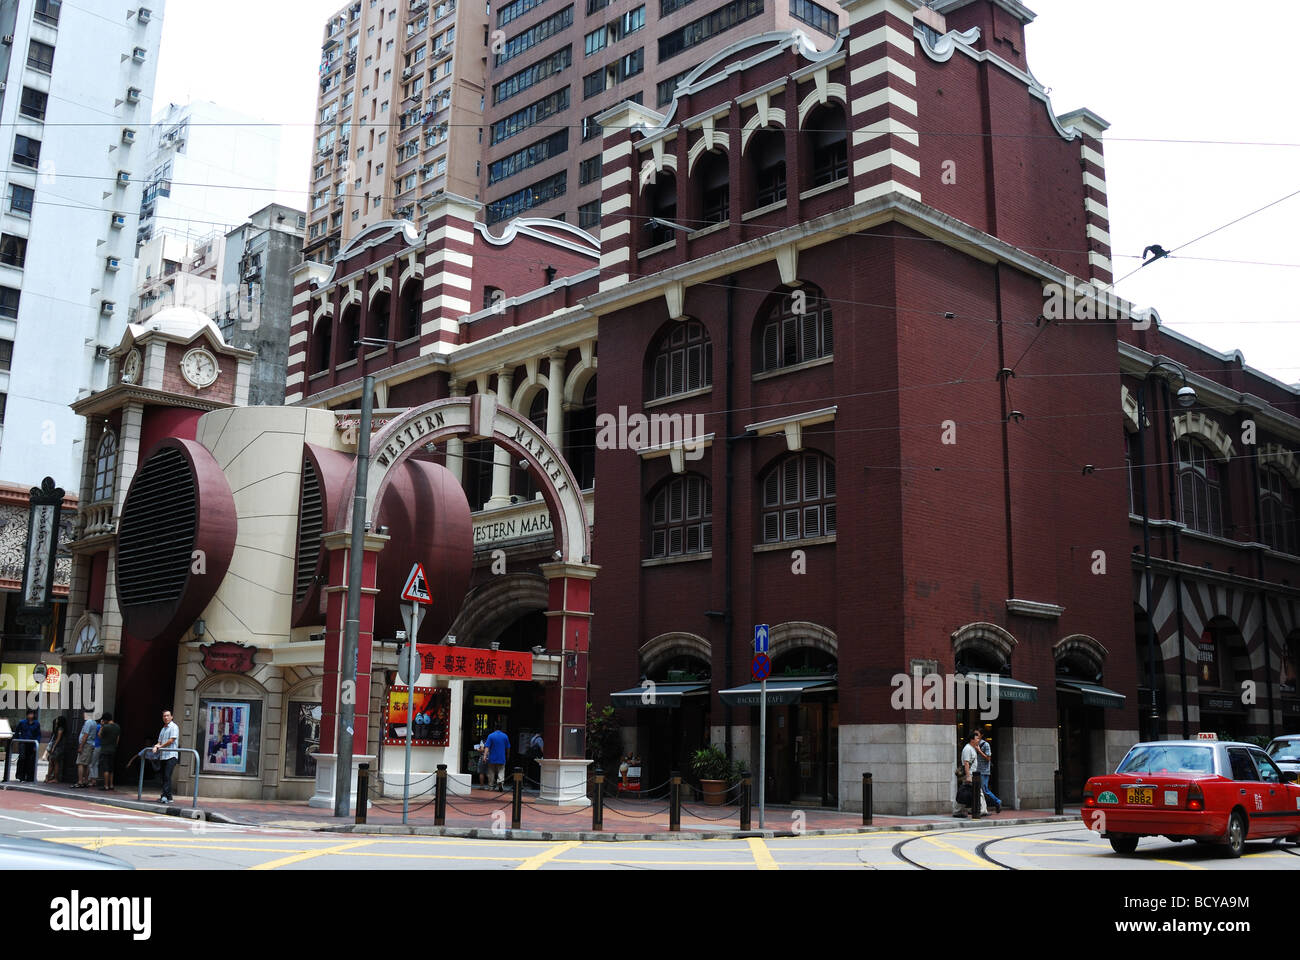 L'ancien marché de l'Ouest à Hong Kong Banque D'Images